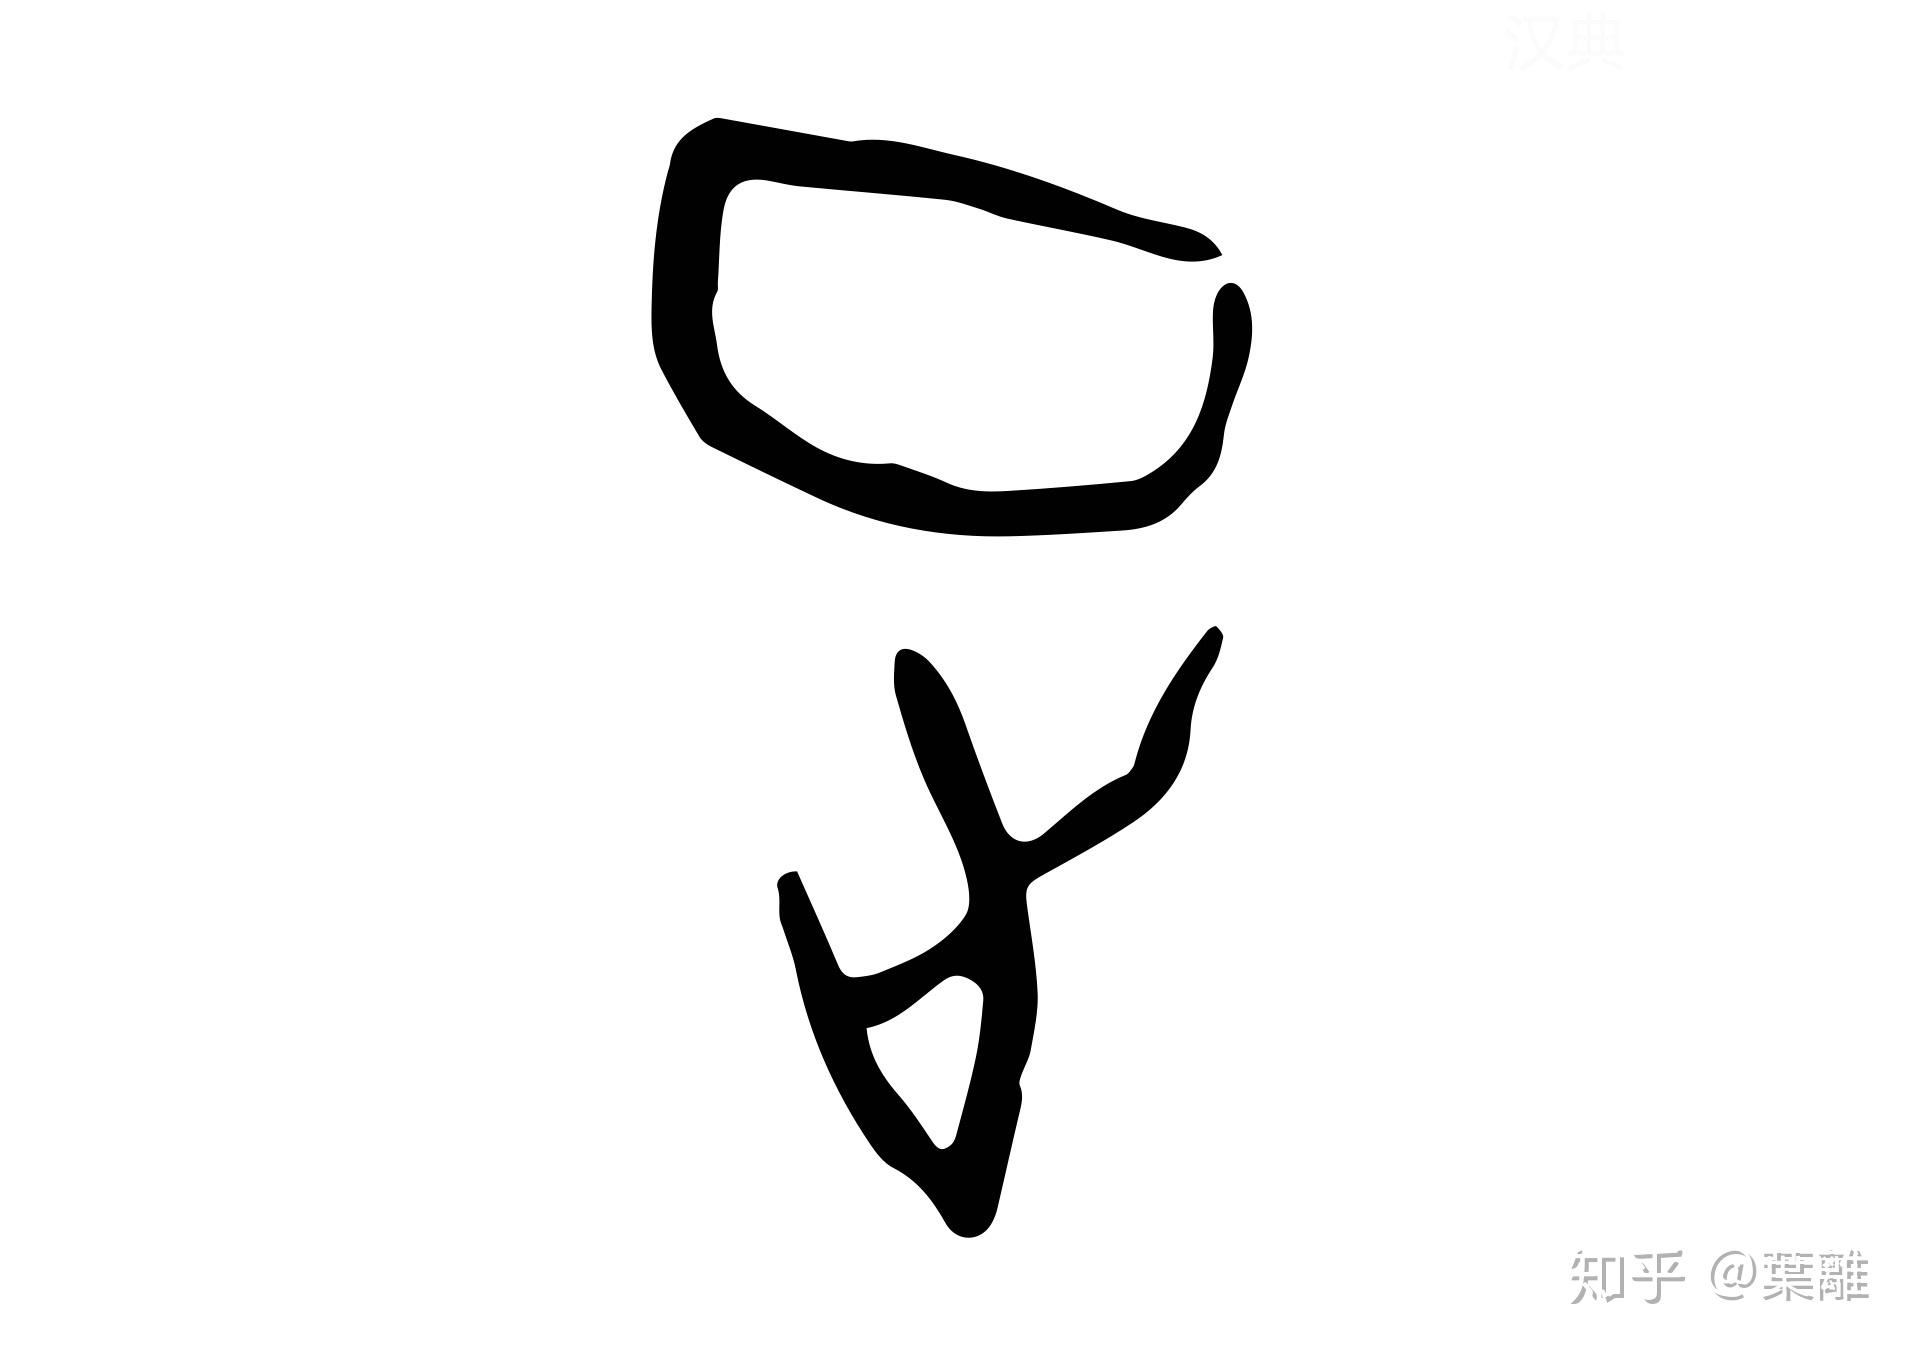 甲骨文 正正的甲骨文字形类似,上面的符号表示方向,目标,下面是足